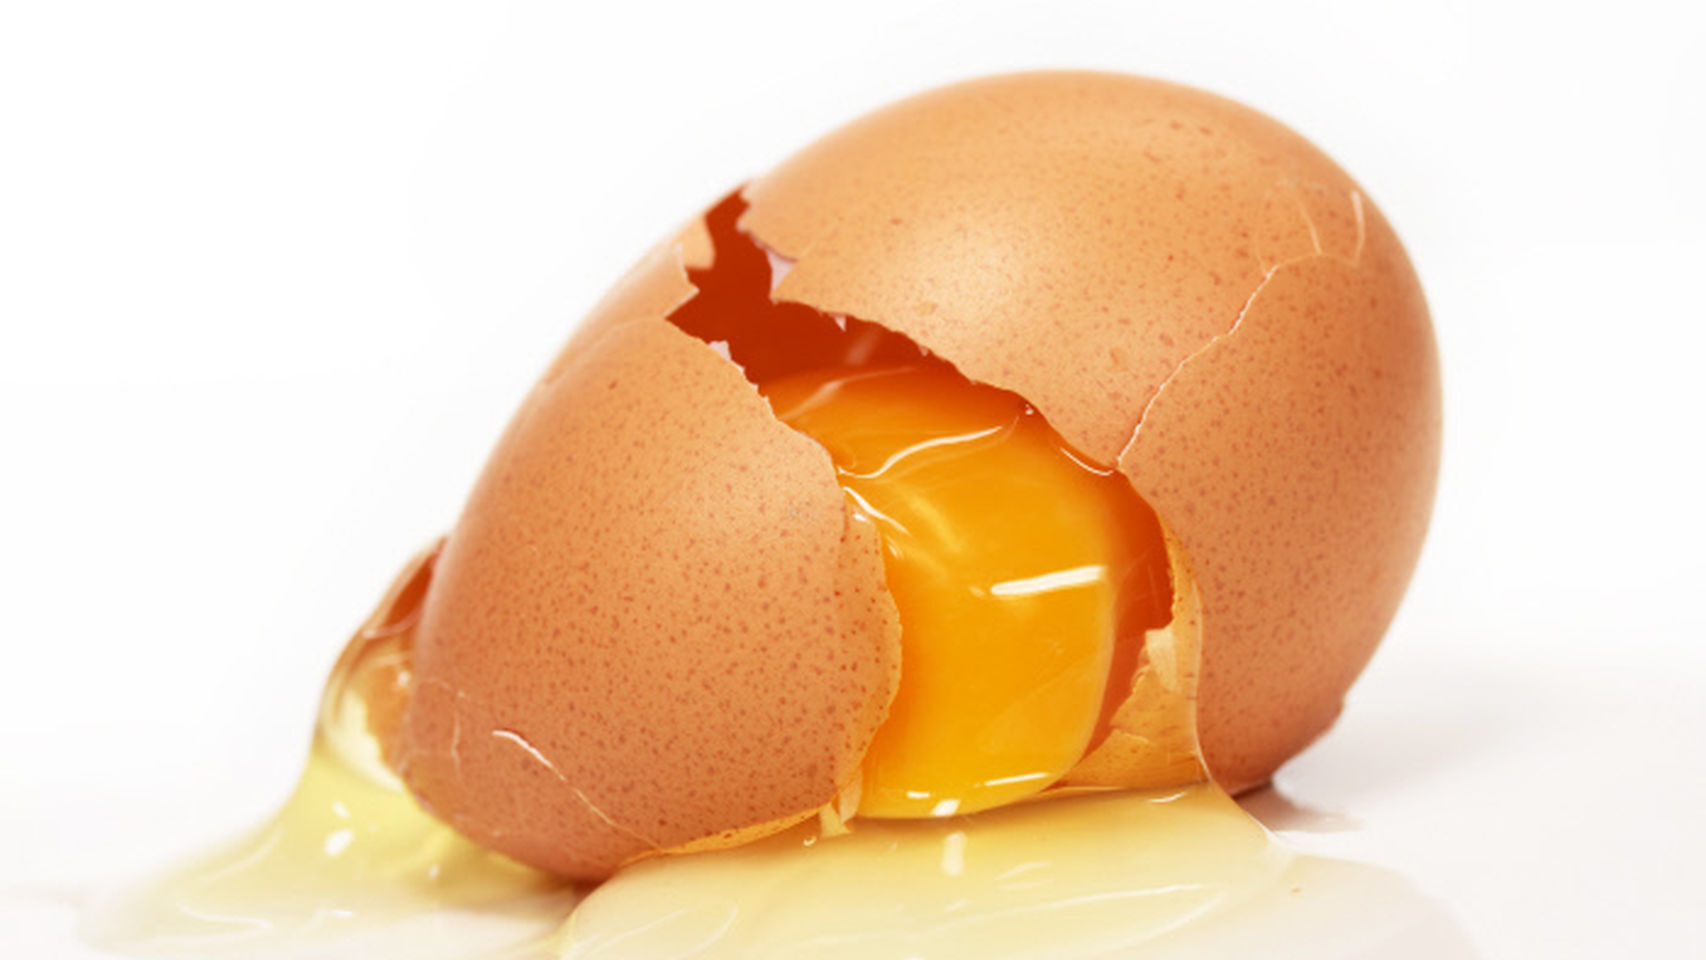 Los huevos son seguros si se cocinan y se manipulan de forma apropiada.